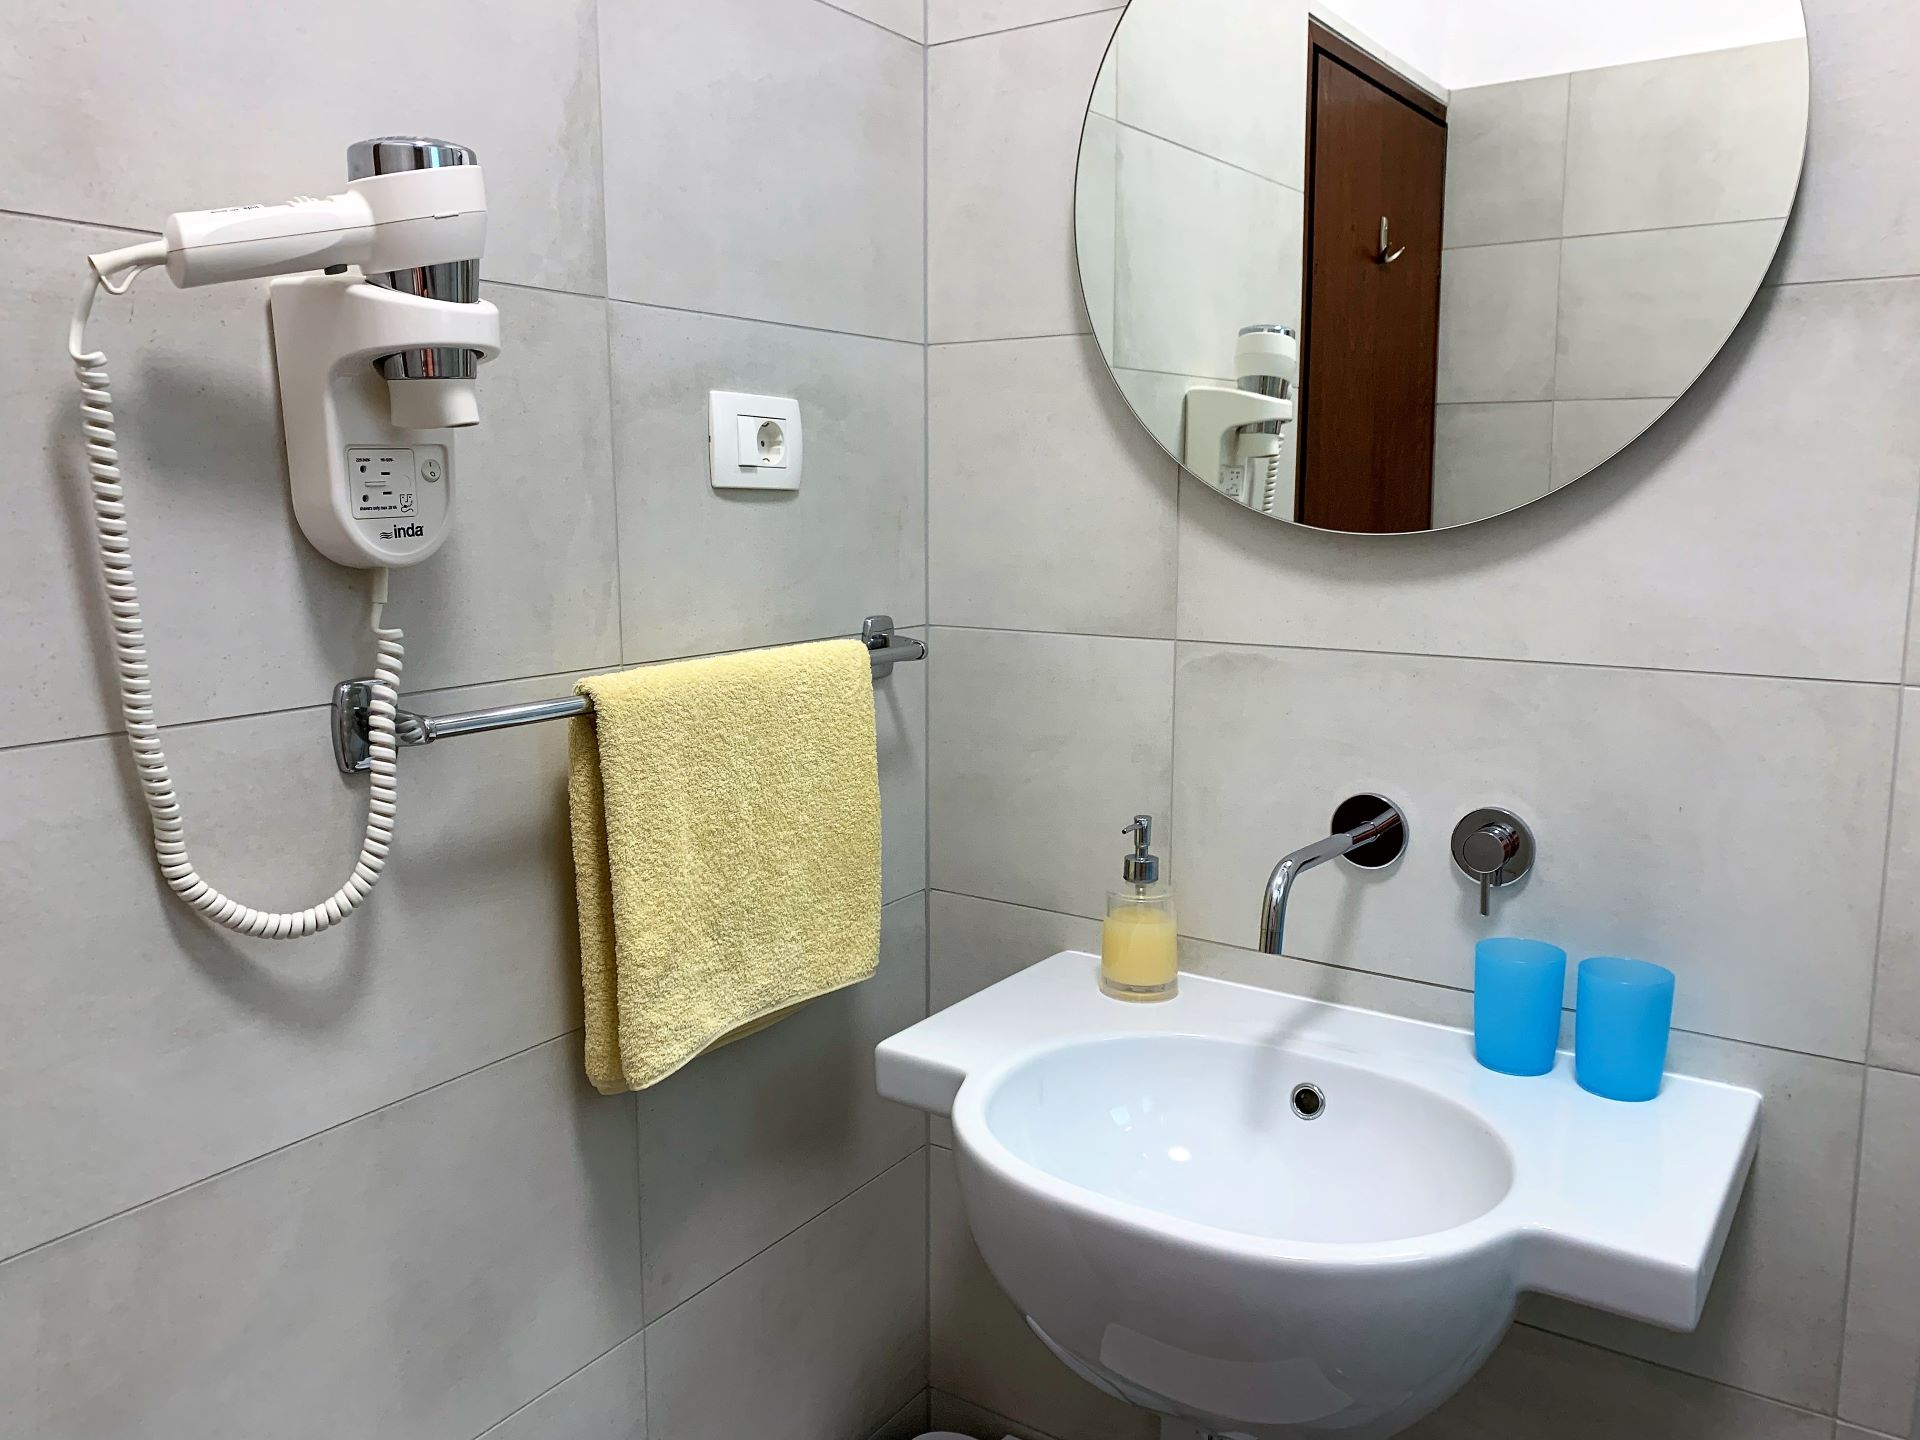 Rustico bathroom Porec villas.jpg